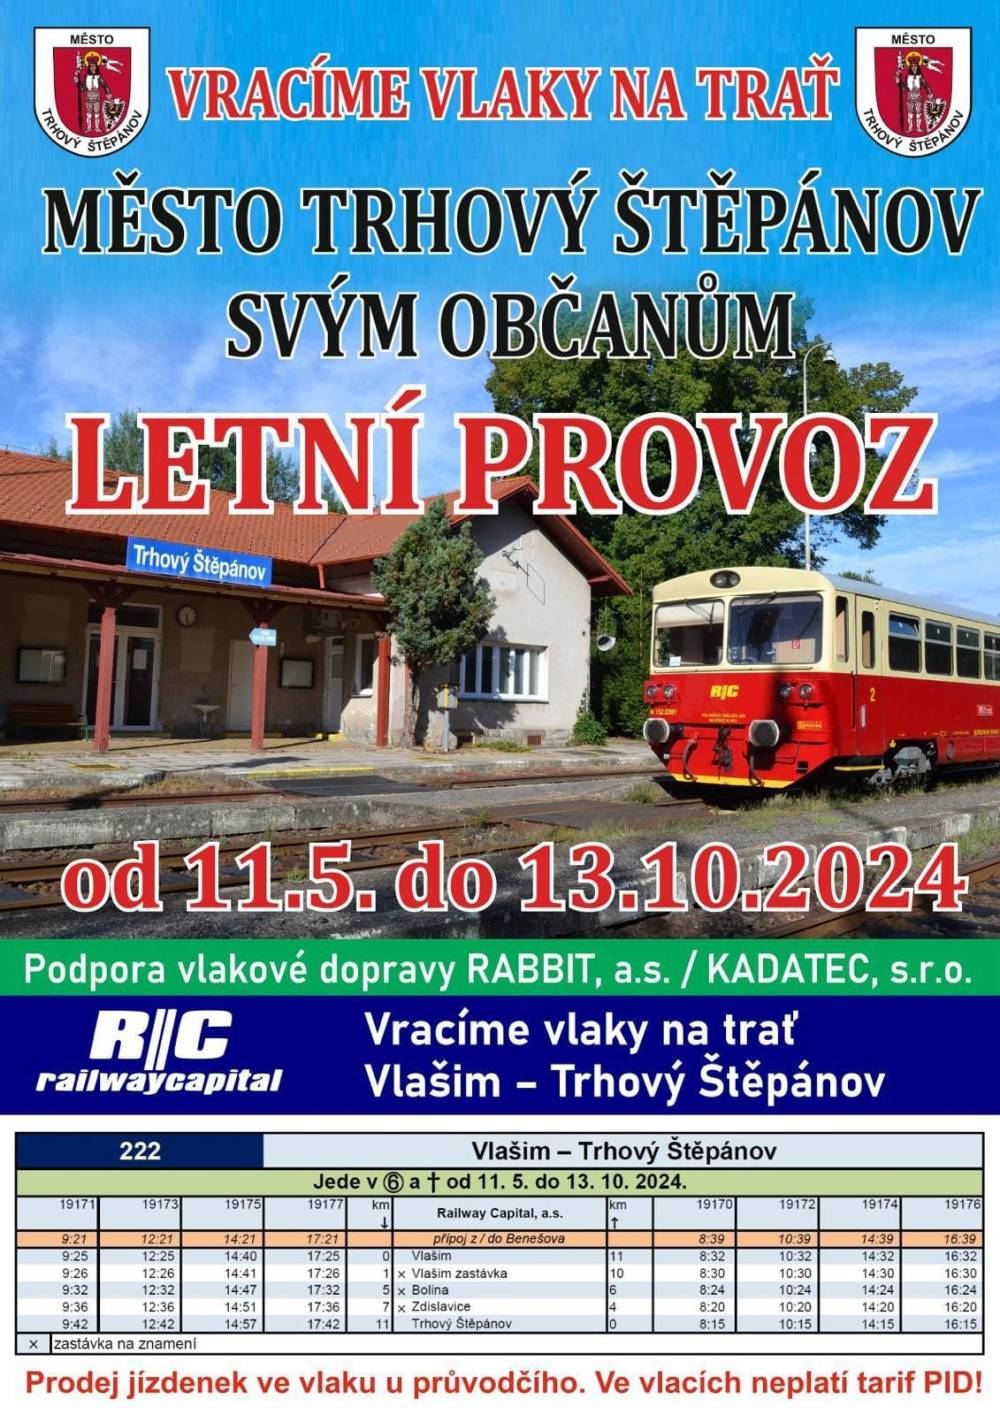 Letní provoz vlaků Vlašim - Trhový Štěpánov